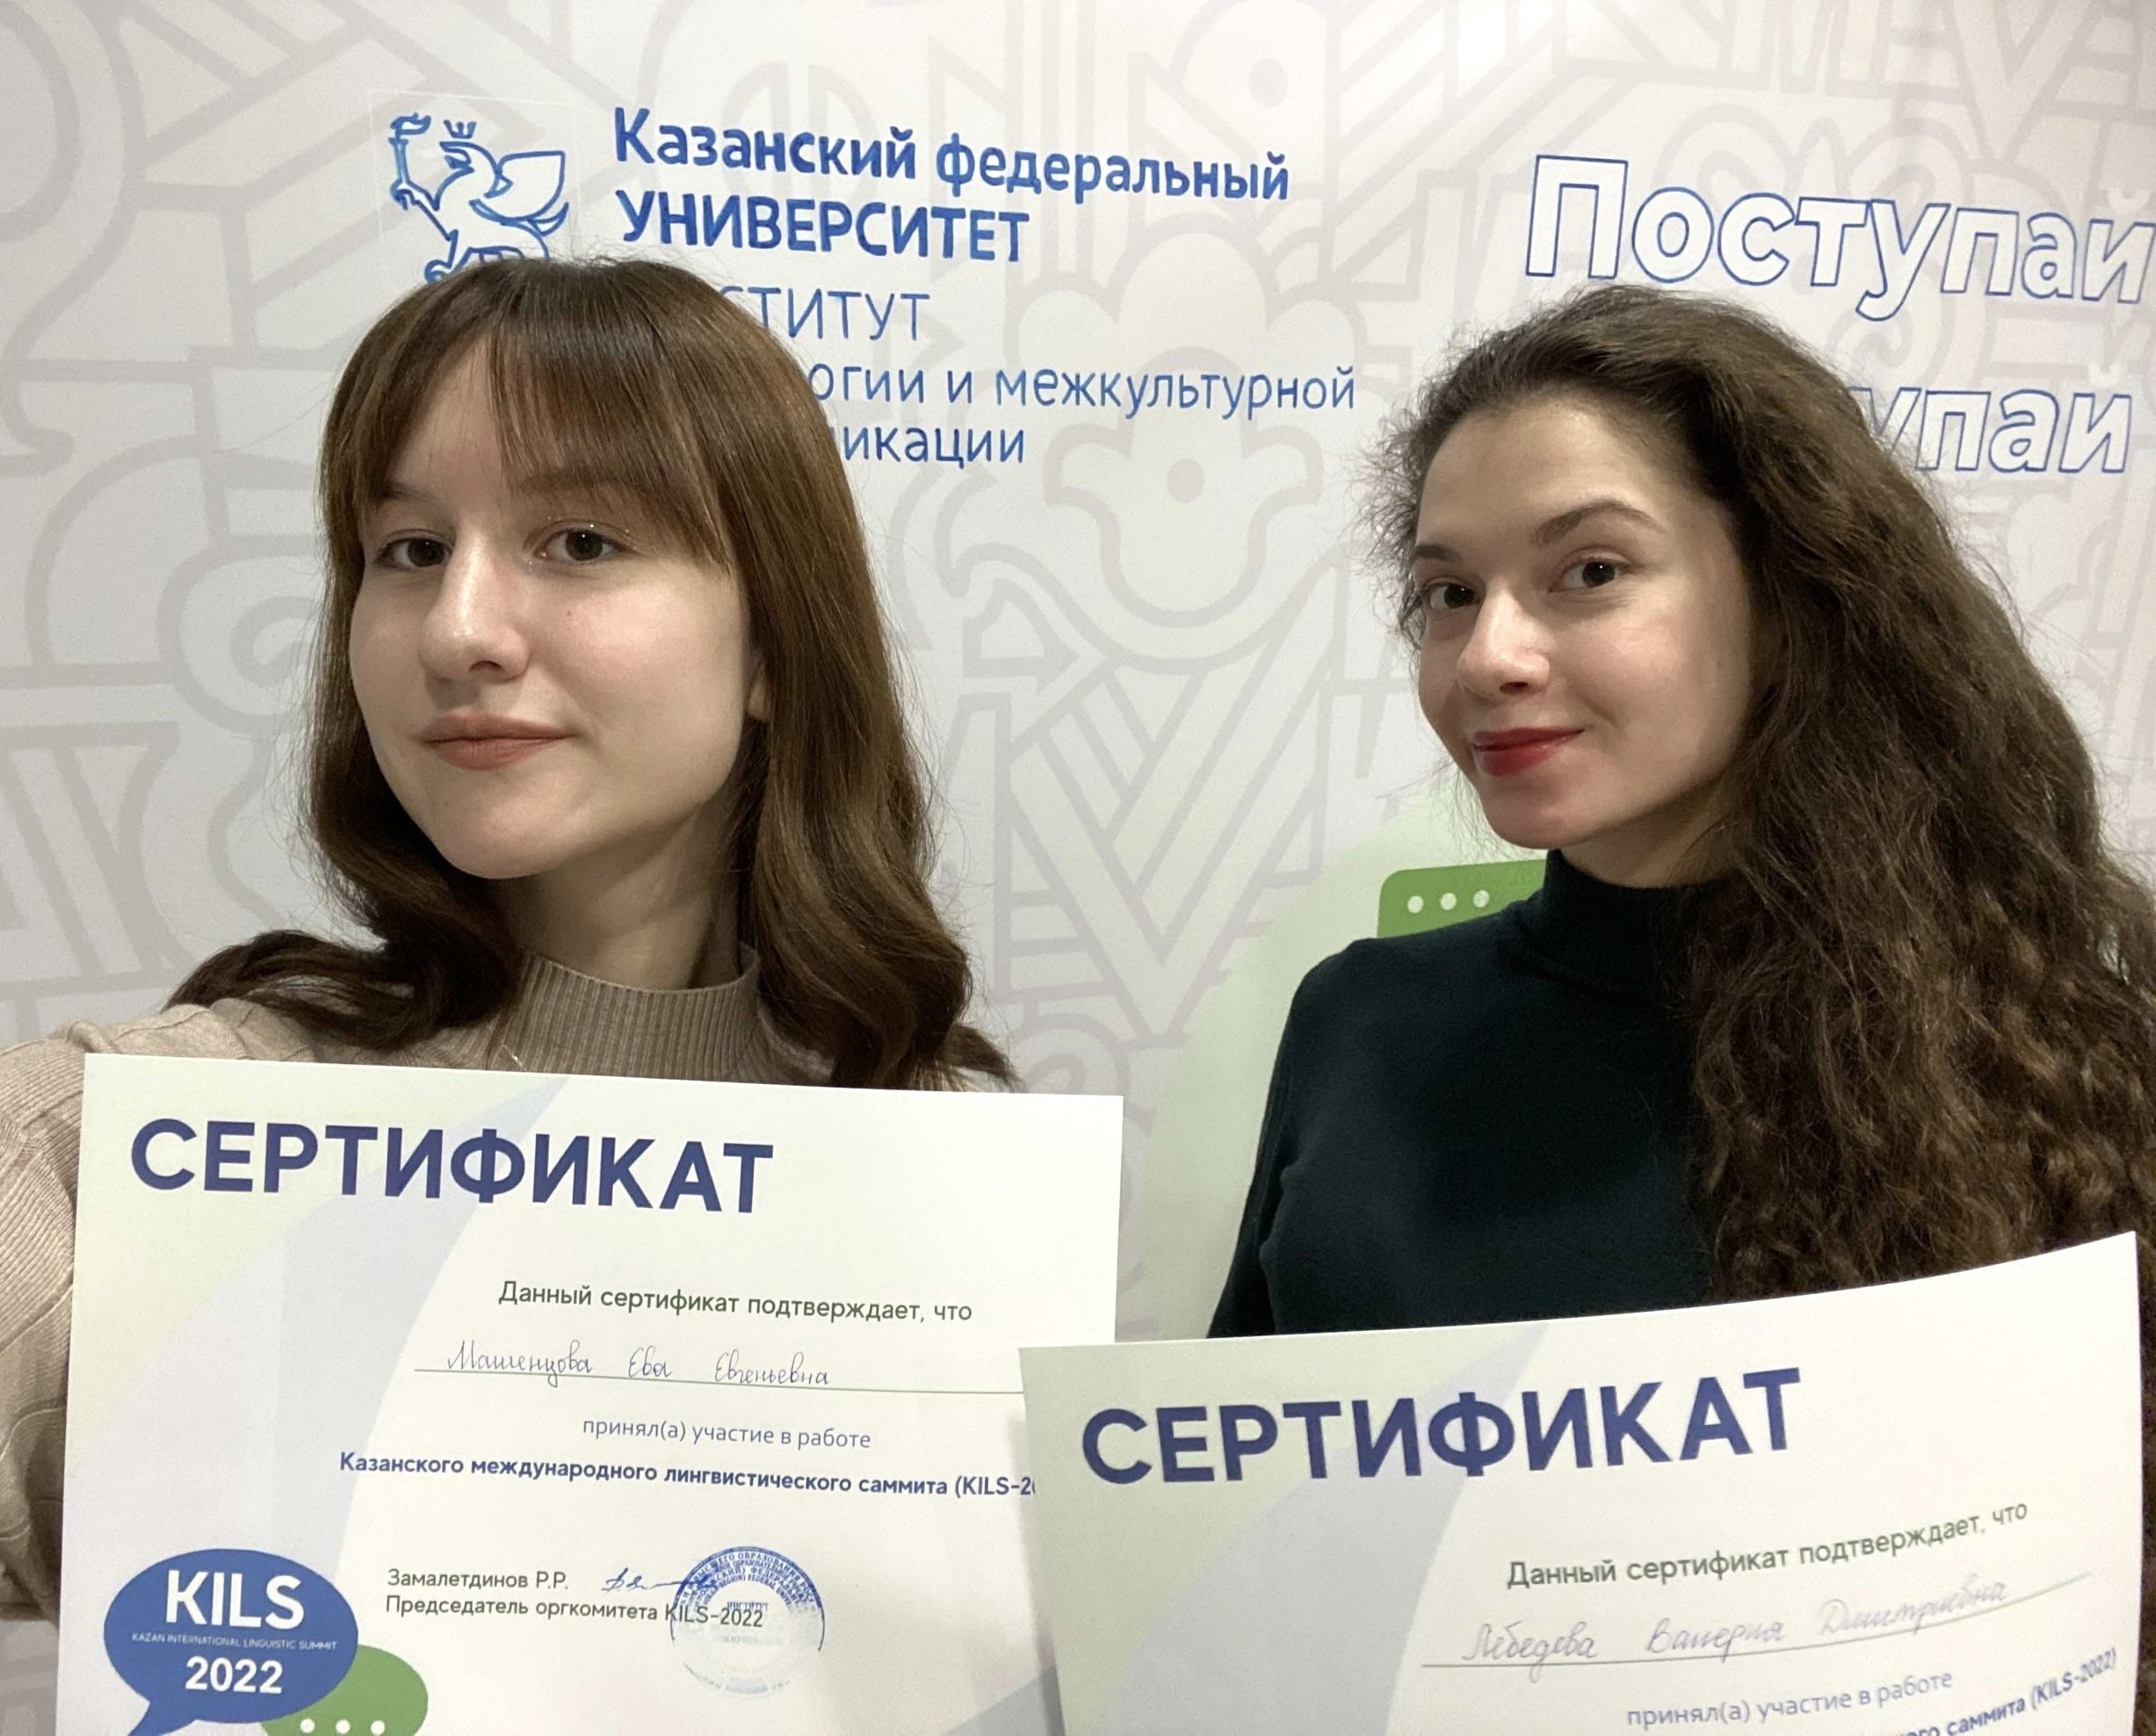 Студентки БФУ выступили на Международной научной конференции по современной лингвистике в Казани |  1